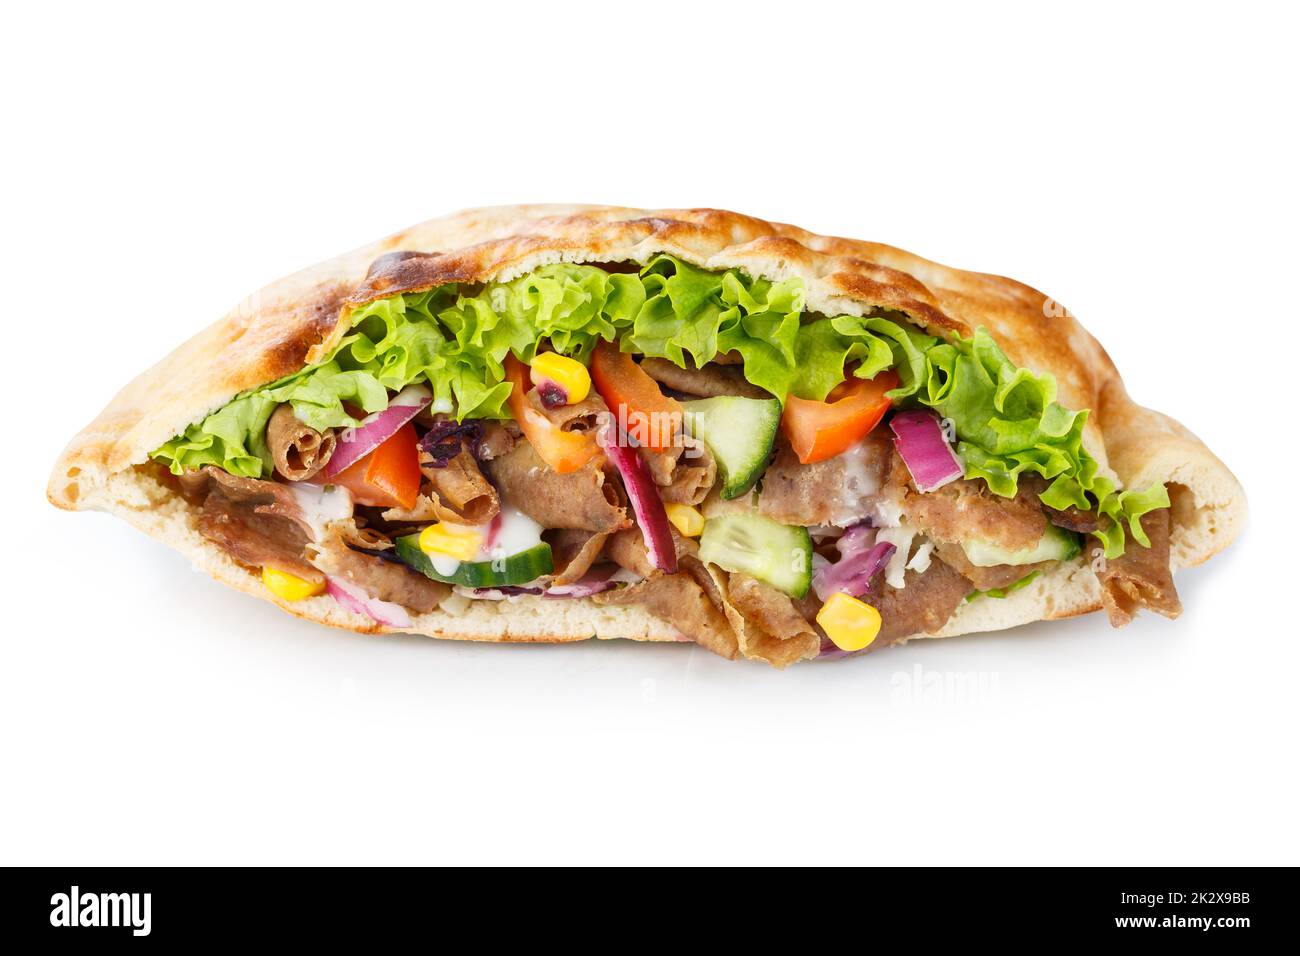 DÃ¶ner Kebab Doner Kebap Fast Food in Fladenbrot, isoliert auf weißem Hintergrund Stockfoto